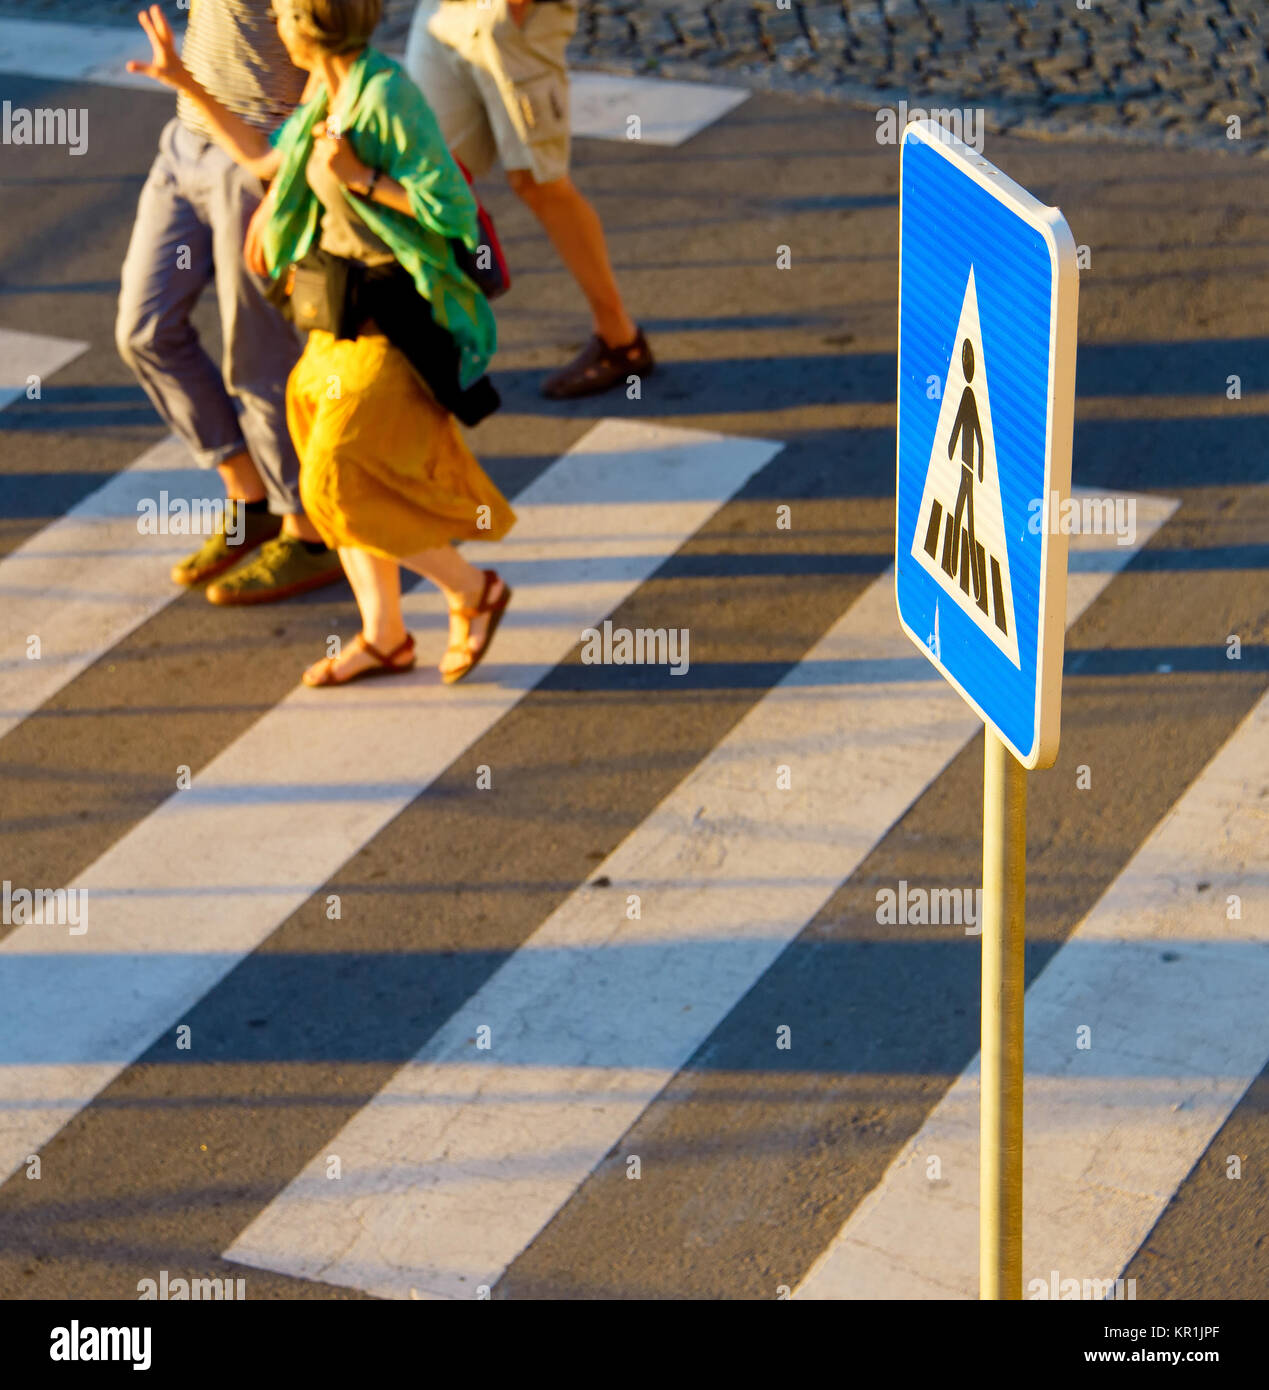 Les personnes qui traversent une route sur un passage pour piétons. Se concentrer sur un signe Banque D'Images